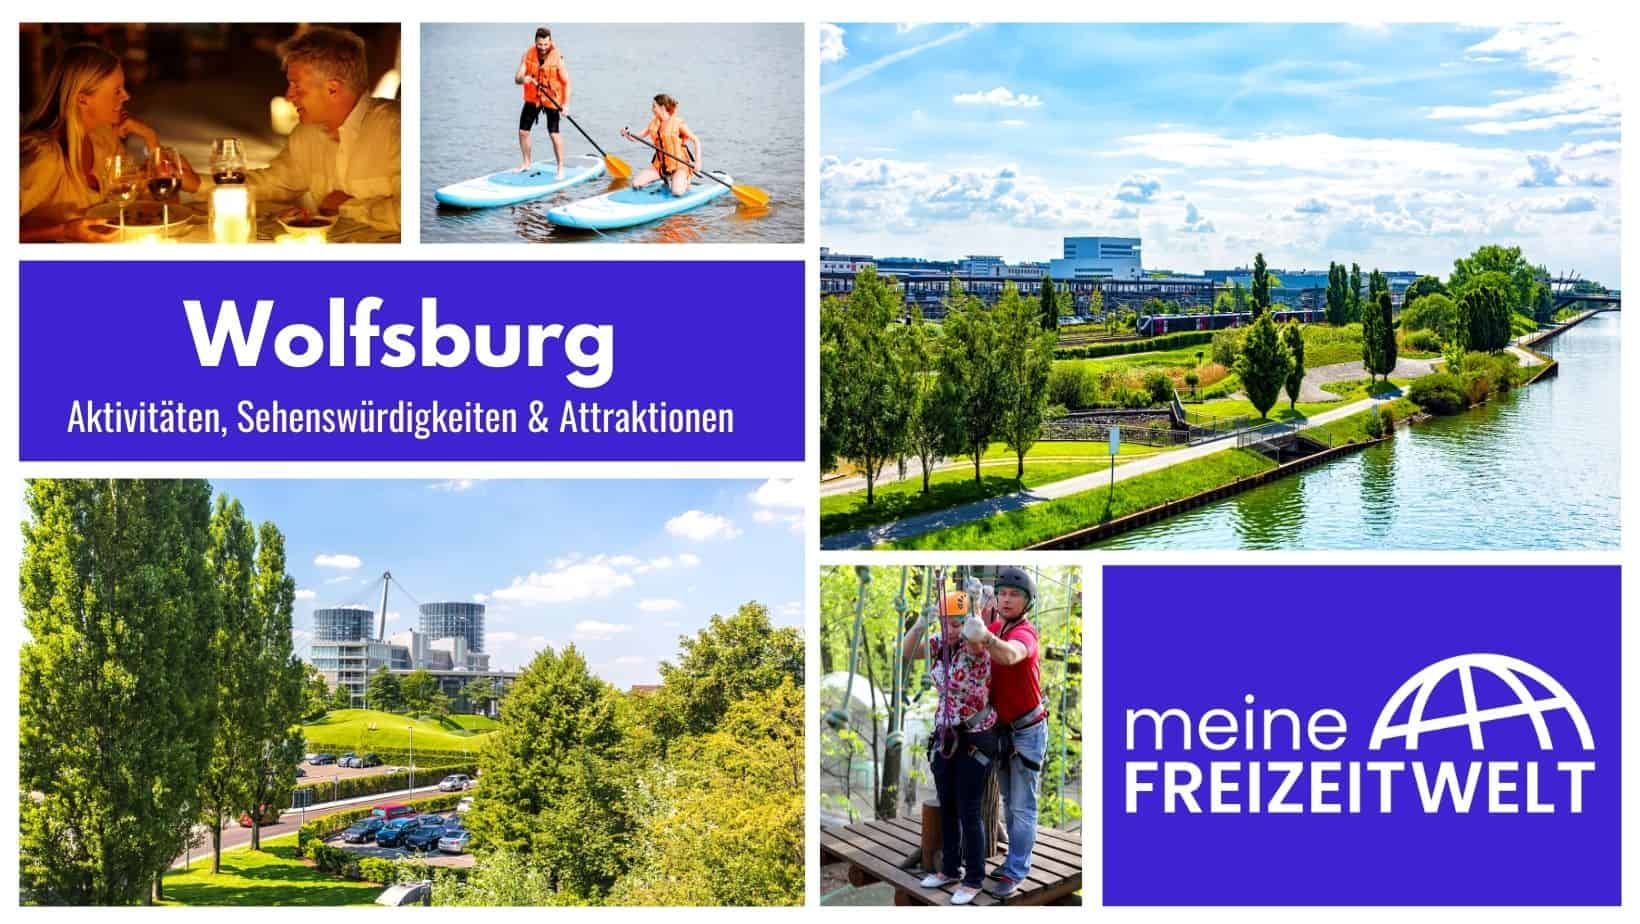 Wolfsburg Aktivitäten, Sehenswürdigkeiten & Attraktionen